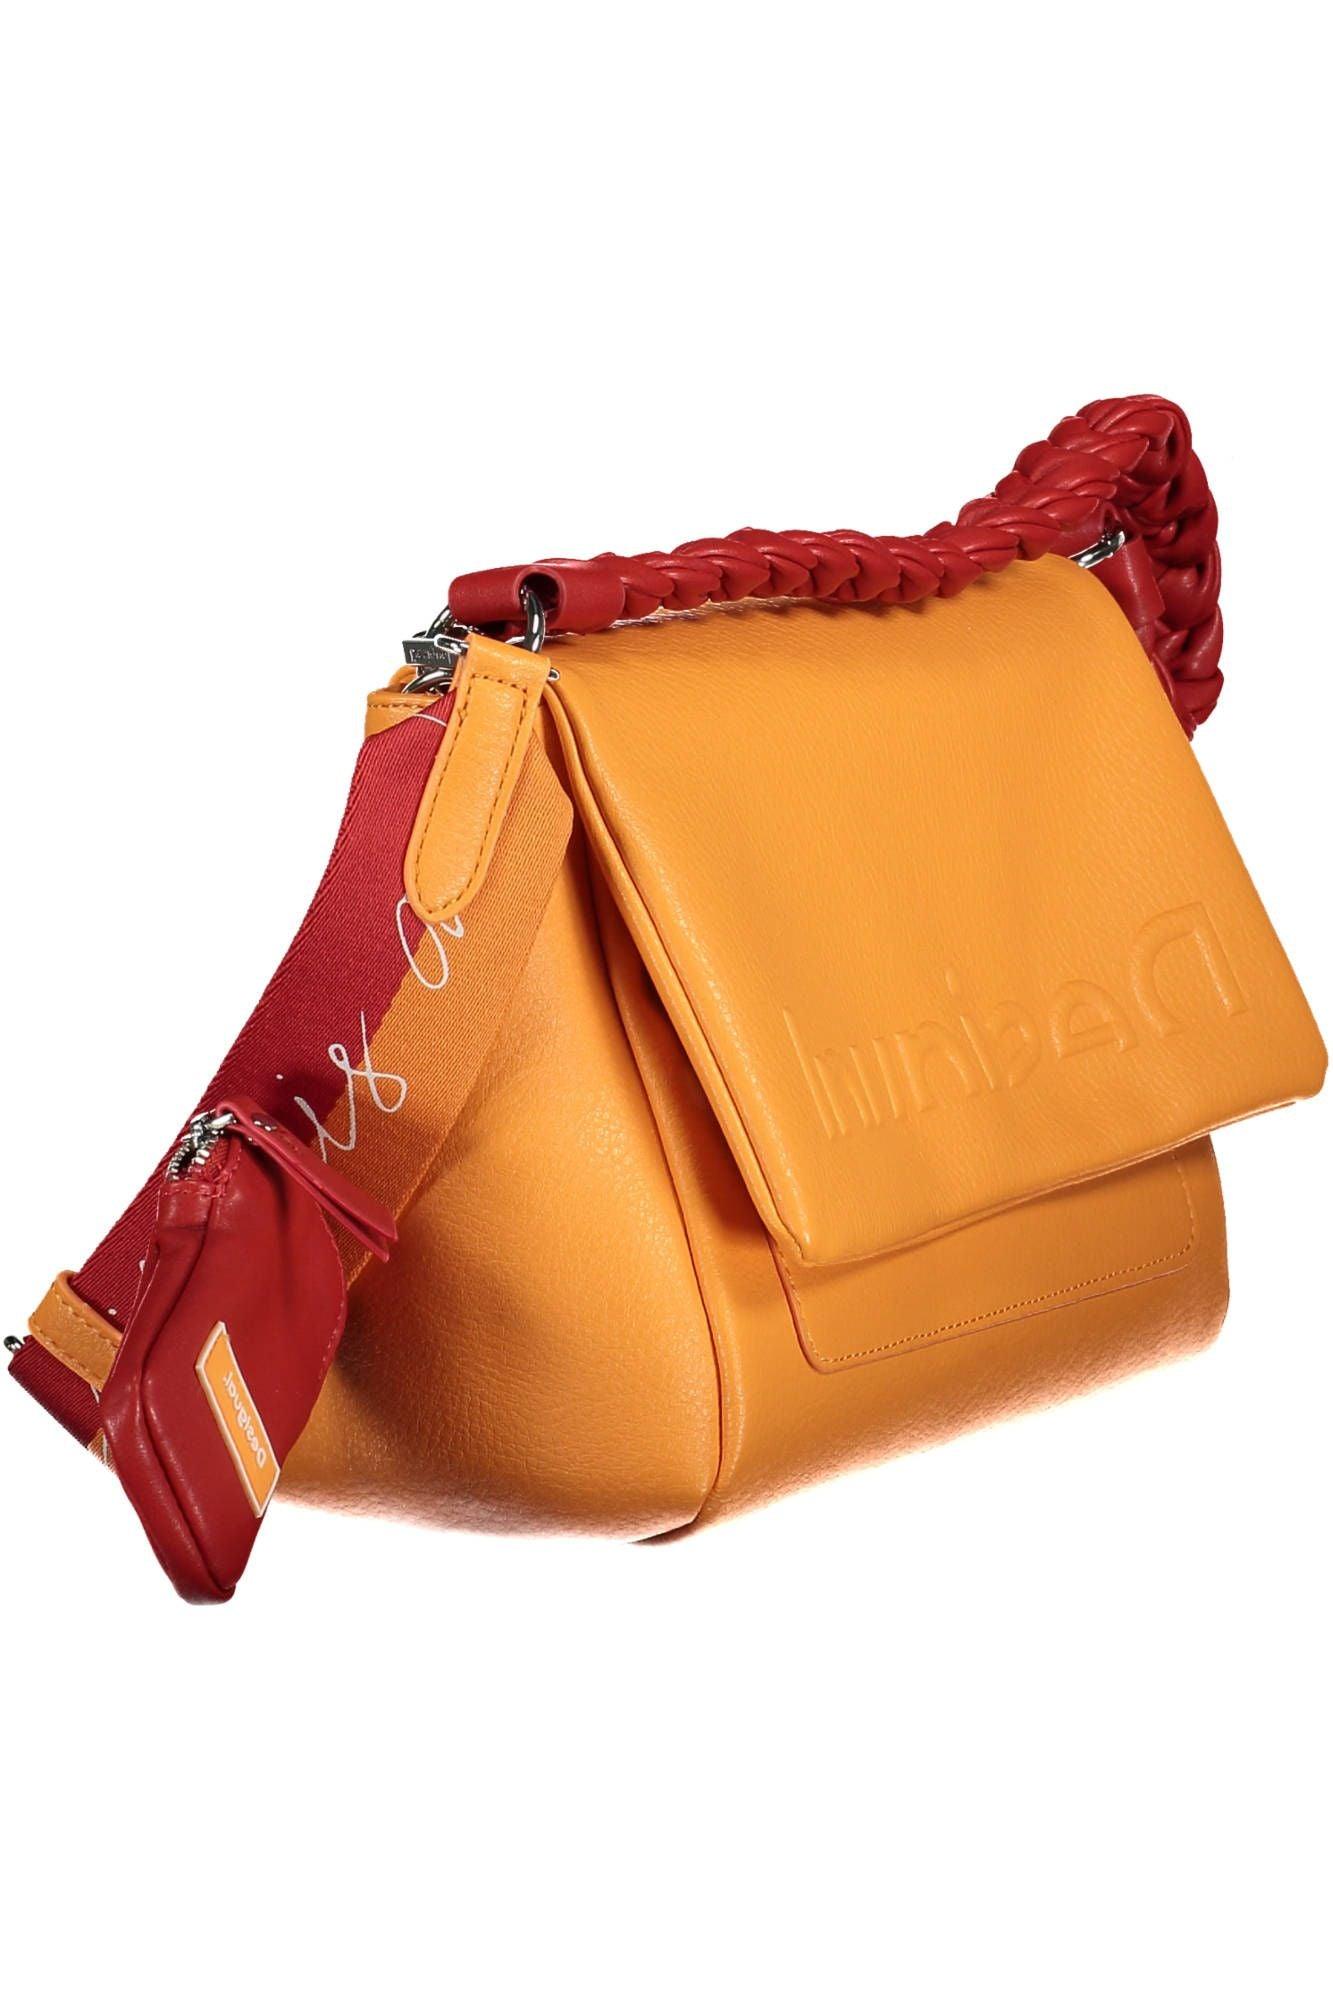 Desigual Chic Orange Shoulder Bag with Contrasting Details - PER.FASHION